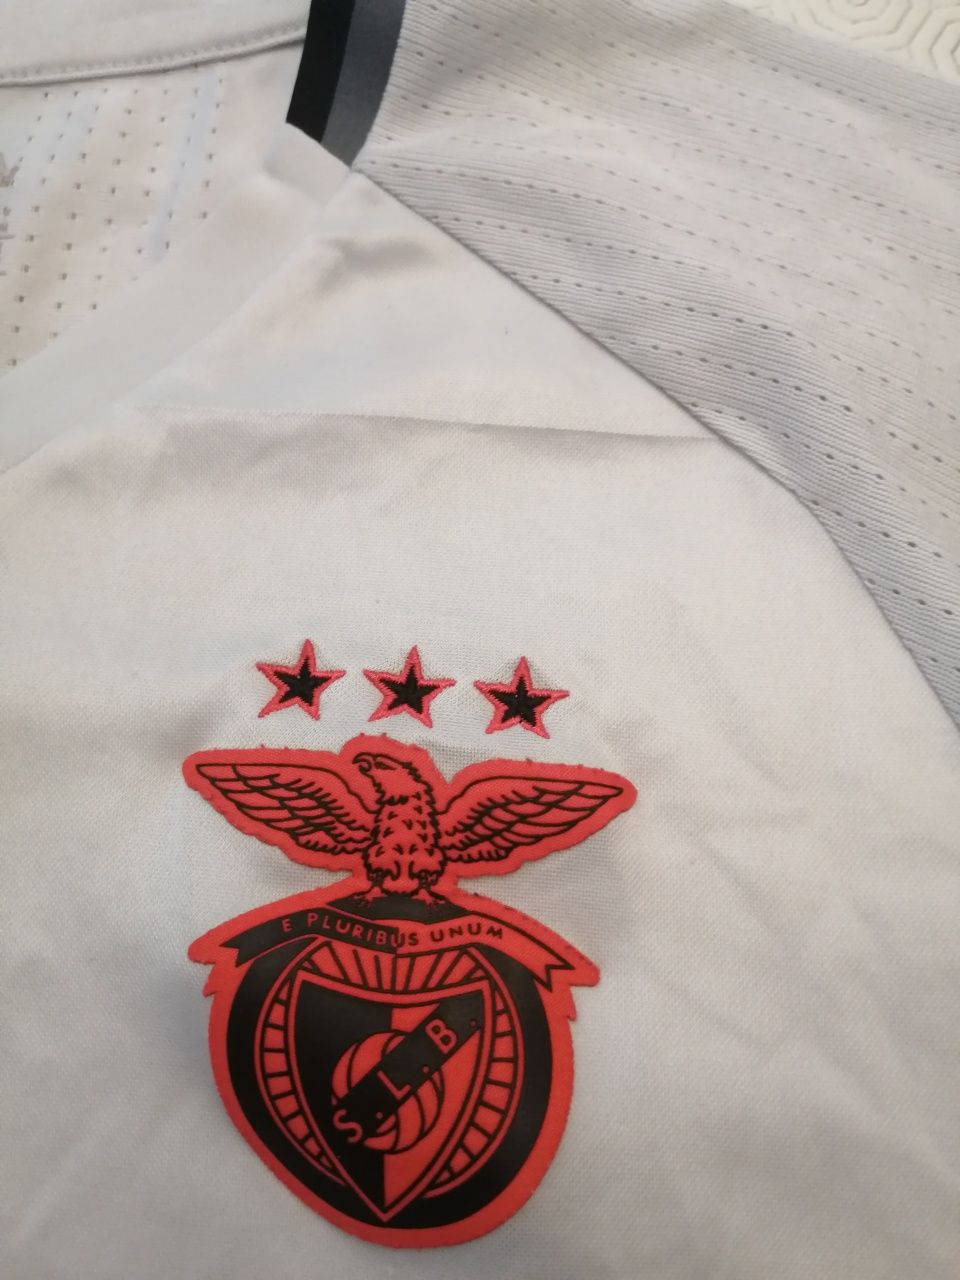 T shirt Benfica usada